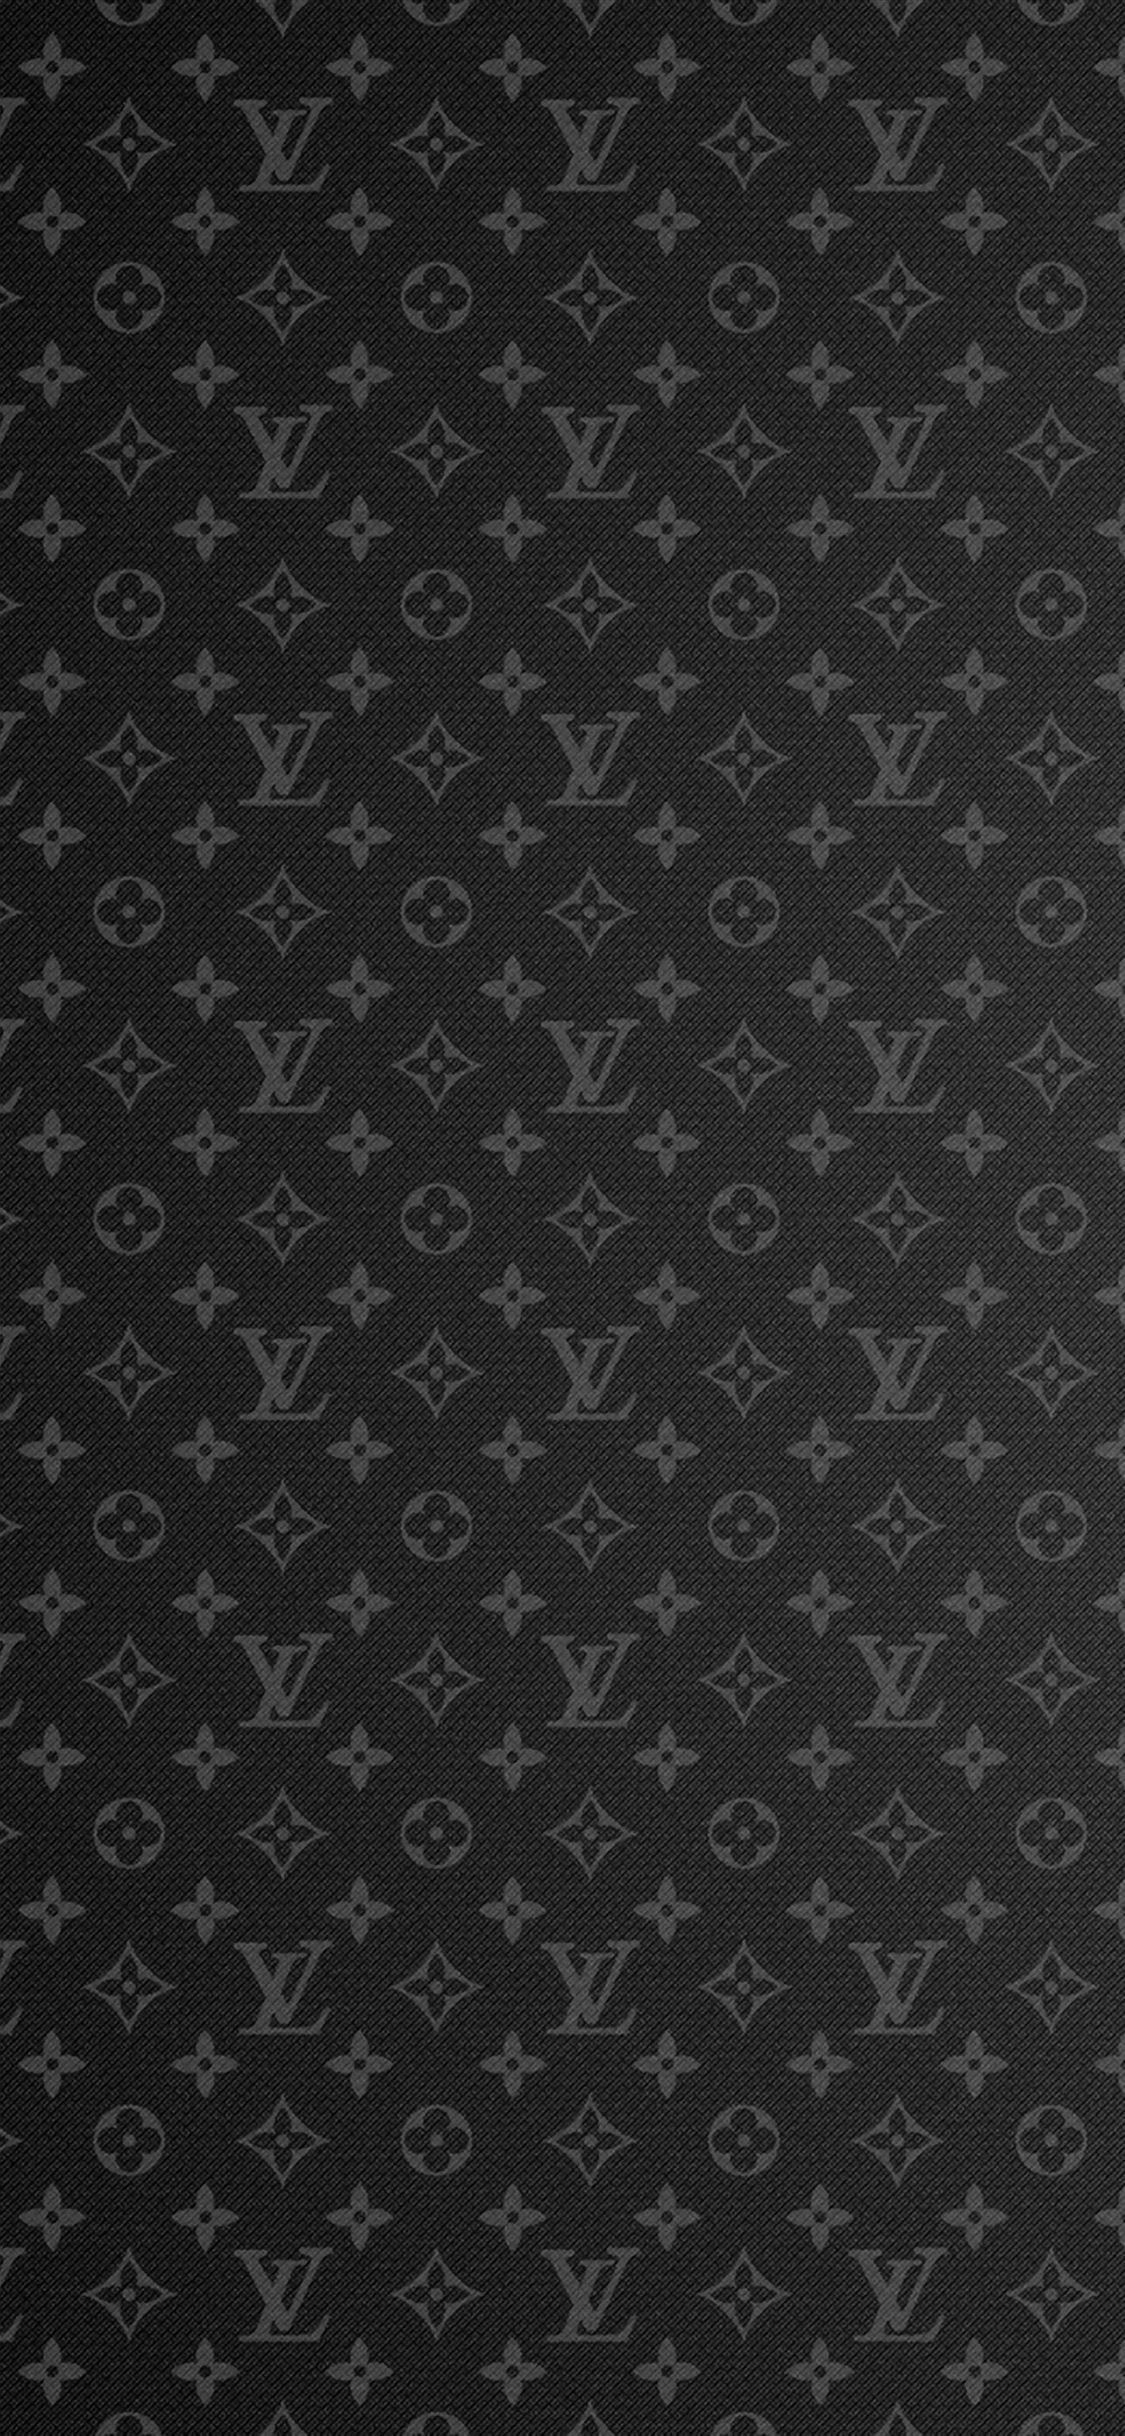 Bạn đang tìm kiếm chiếc điện thoại iPhone hoàn hảo? Với hình nền Louis Vuitton, bạn có thể tạo nên một xu hướng phong cách độc đáo cho chính mình, vừa trở nên sang trọng vừa đậm chất cá tính.